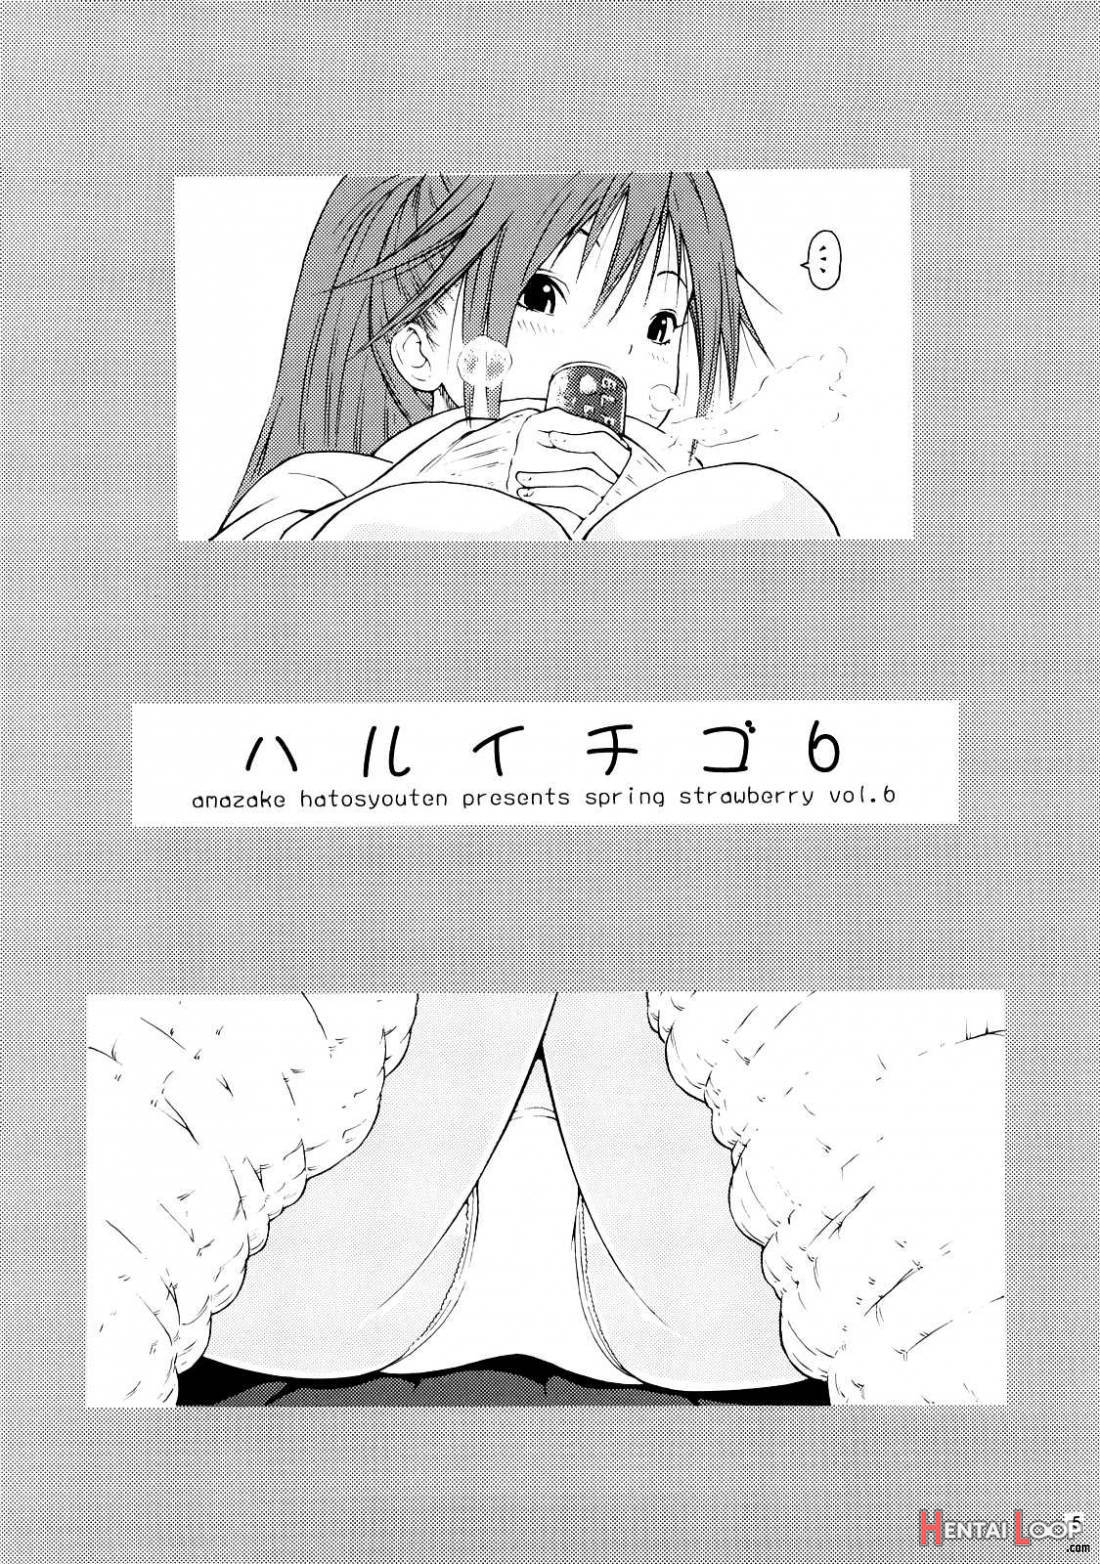 Haru Ichigo Vol.6 page 2